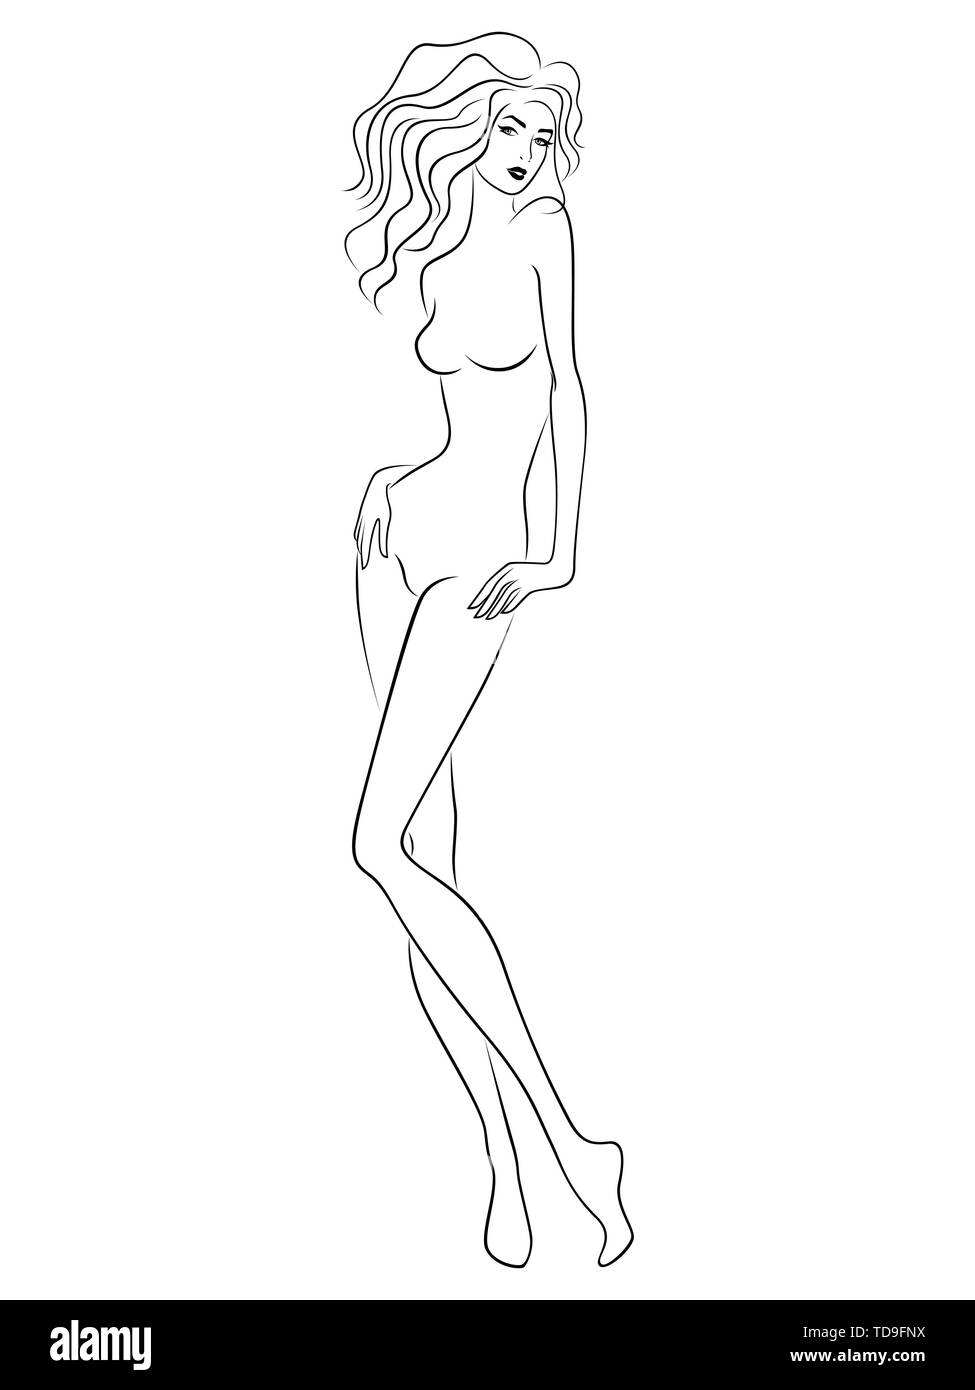 Ð¡schädigen Frau mit schlanken Figur auf dem weißen Hintergrund isoliert, hand Zeichnung Vektor Kontur Stock Vektor